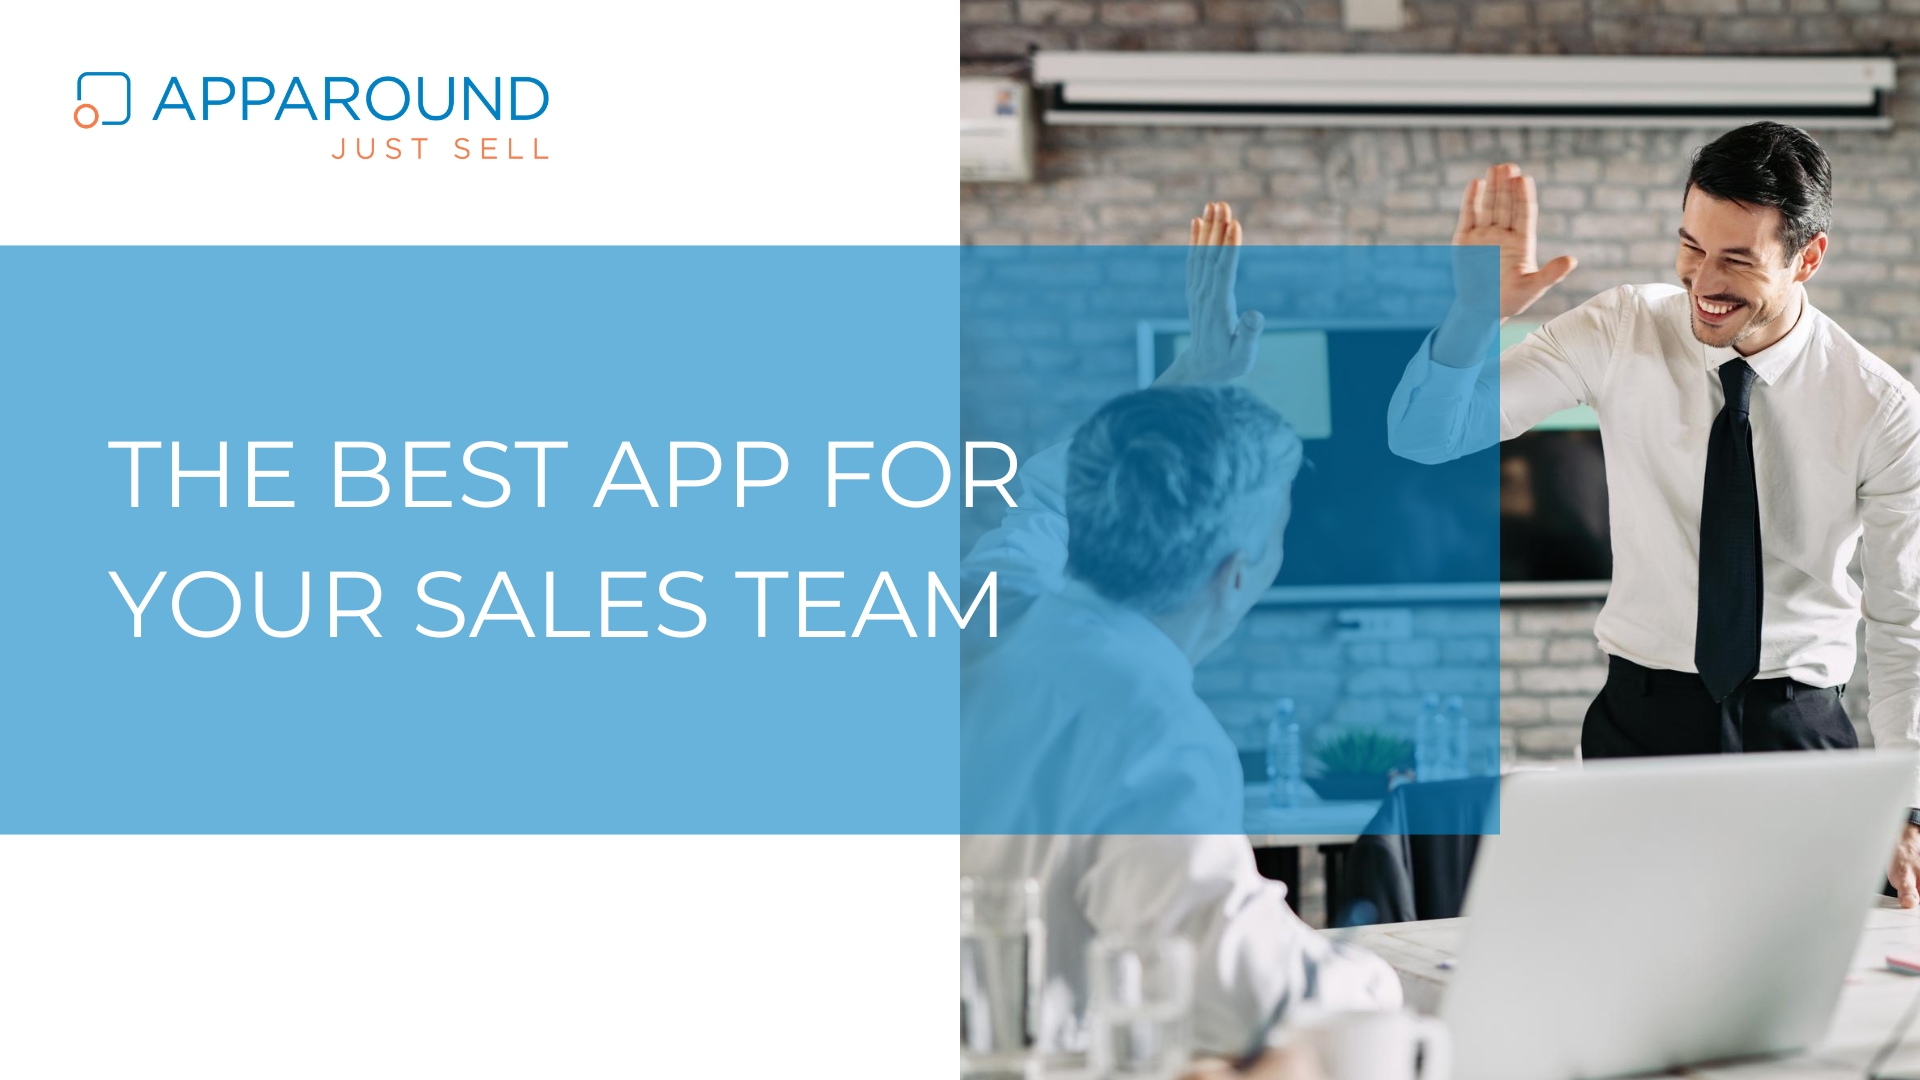 Apparound_Video_Best_App_Sales_Team